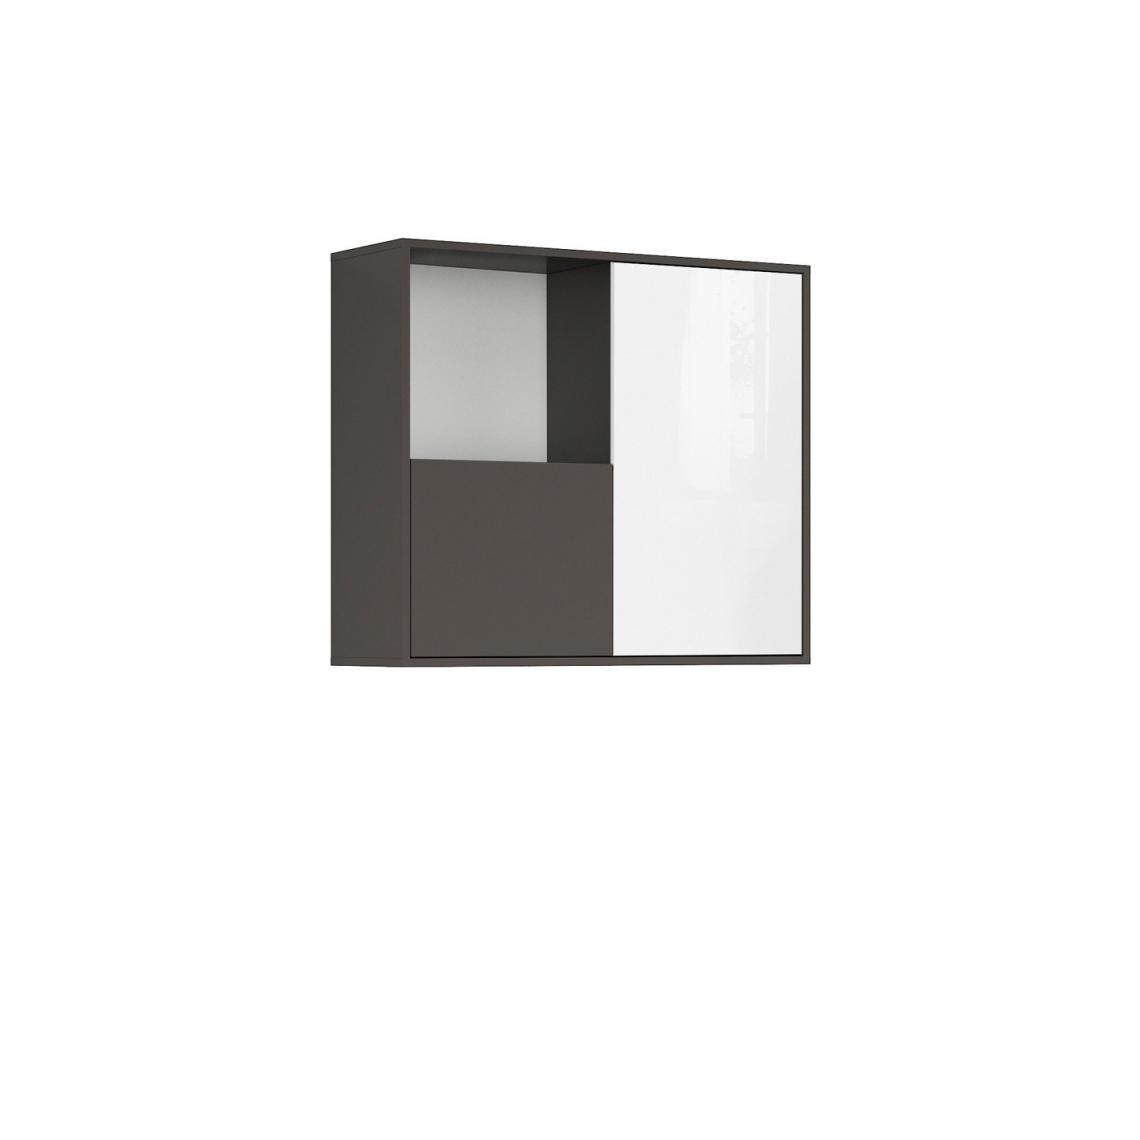 Hucoco - KASUMI - Armoire suspendue style moderne salon/chambre d'ado - 85.5x74.5x28 - 2 portes+tablette - Armoire murale - Gris/Blanc - Etagères